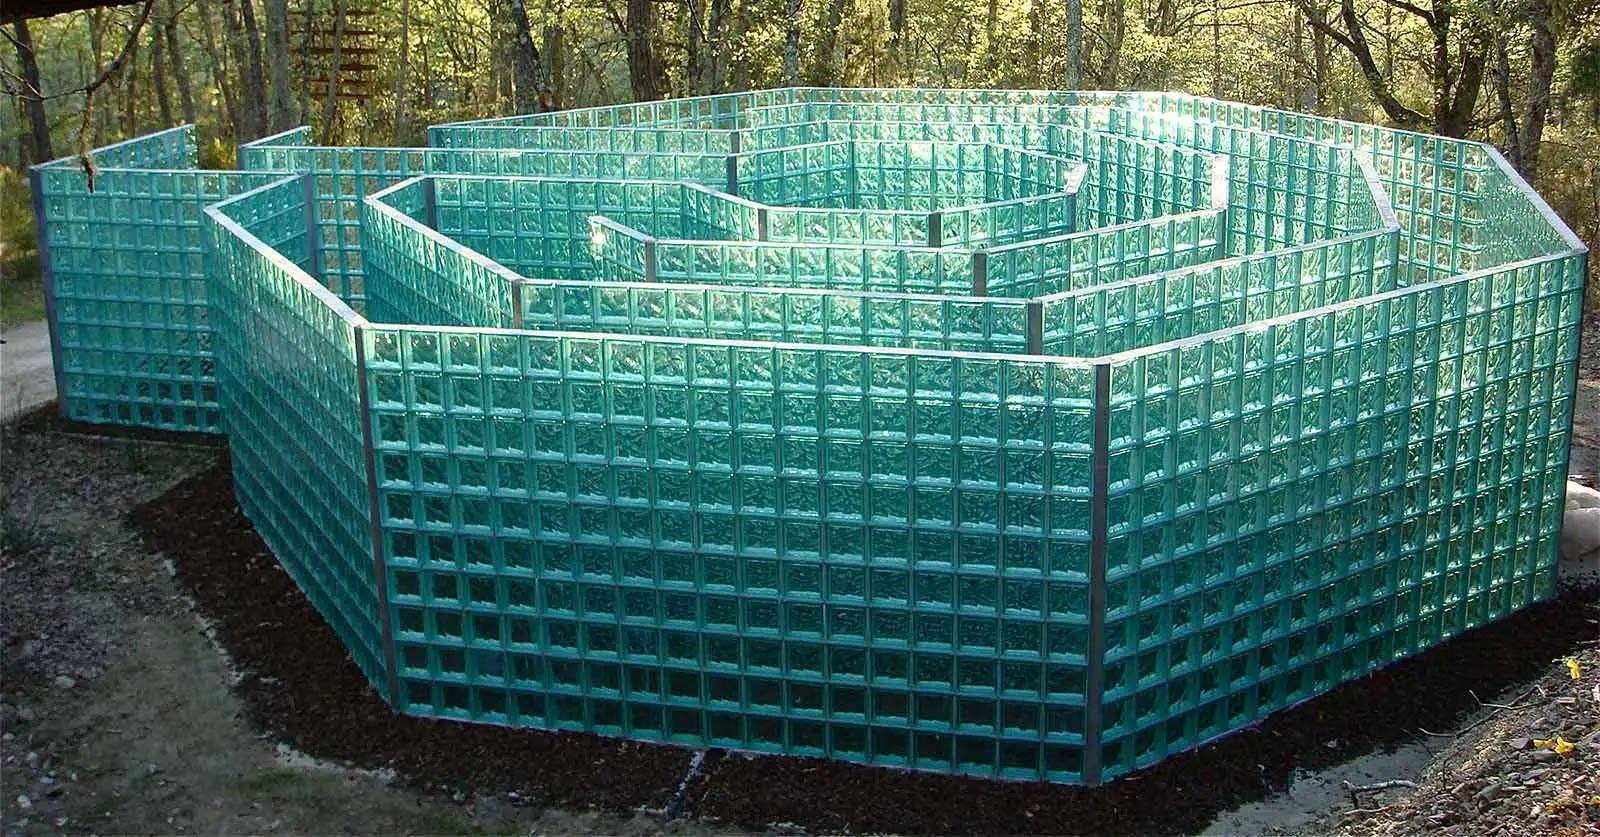 Jeff Saward's glass labyrinth at Chianti Sculpture Park